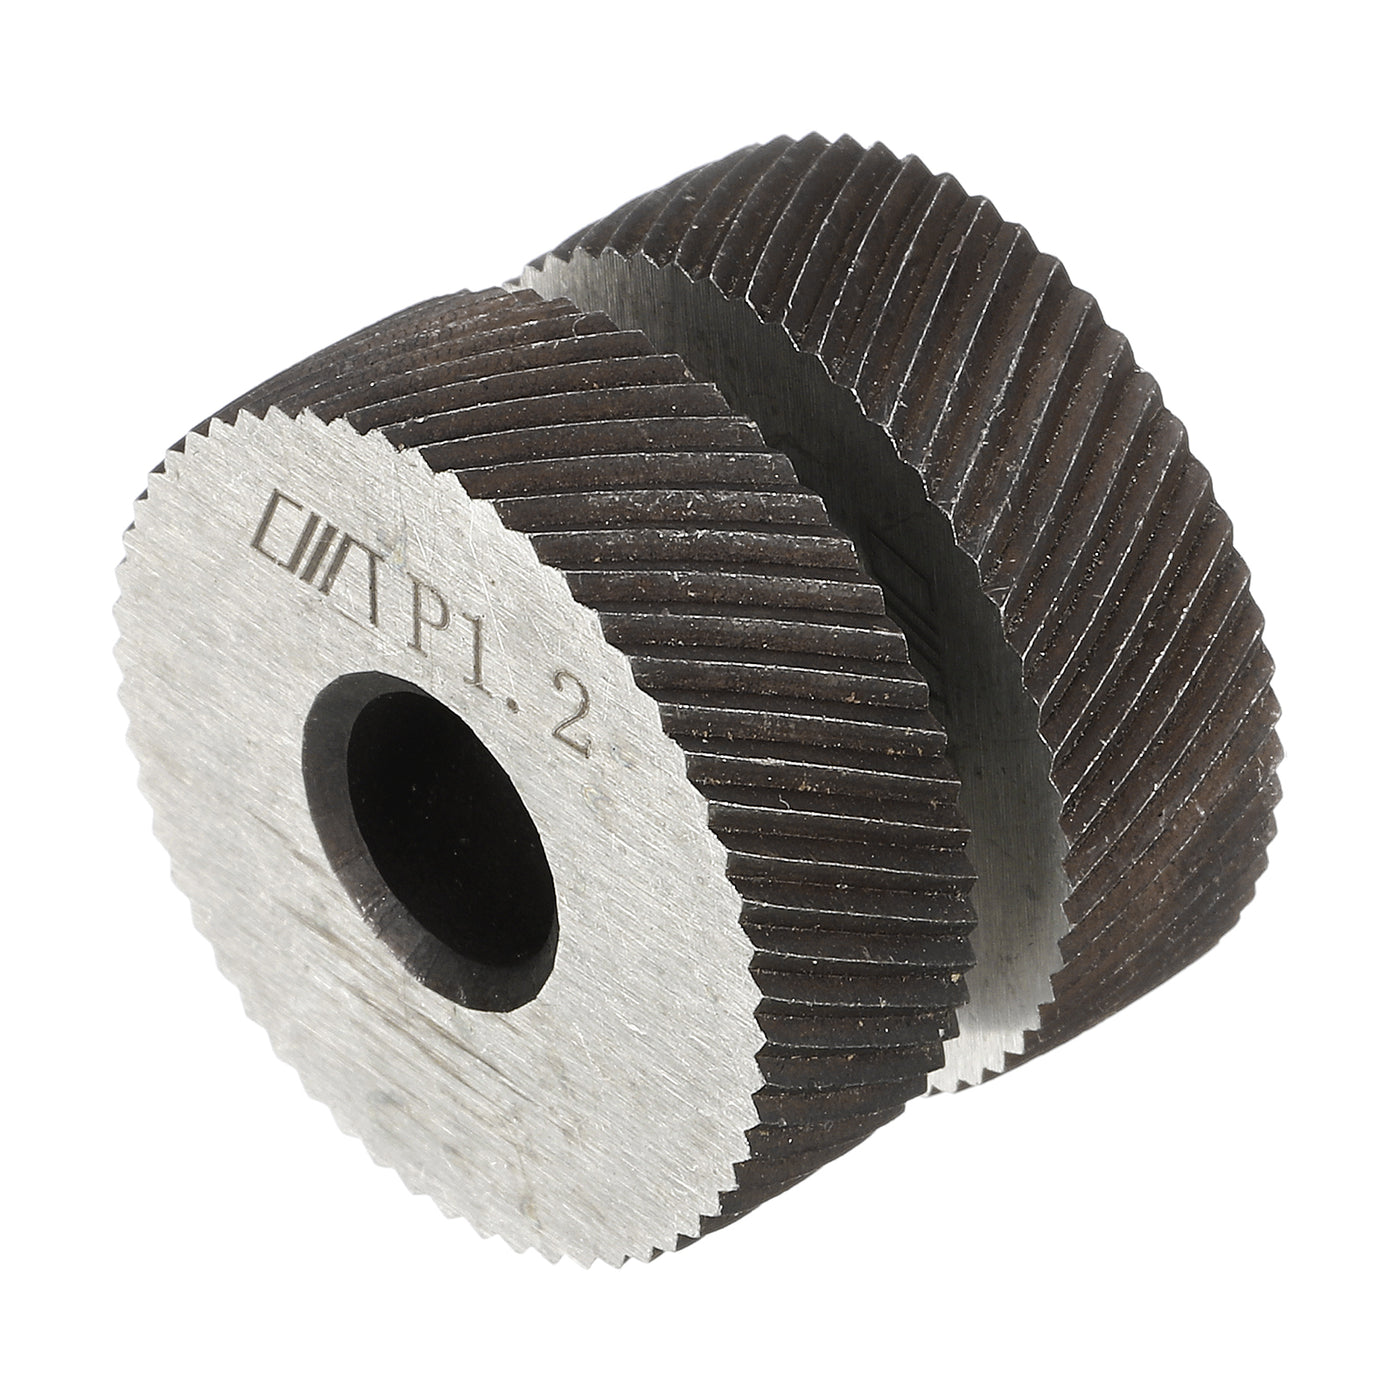 uxcell Uxcell 2Pcs 26x8x8mm Knurling Wheel Kit 1.2mm Pitch Diamond Wheel Linear Knurl